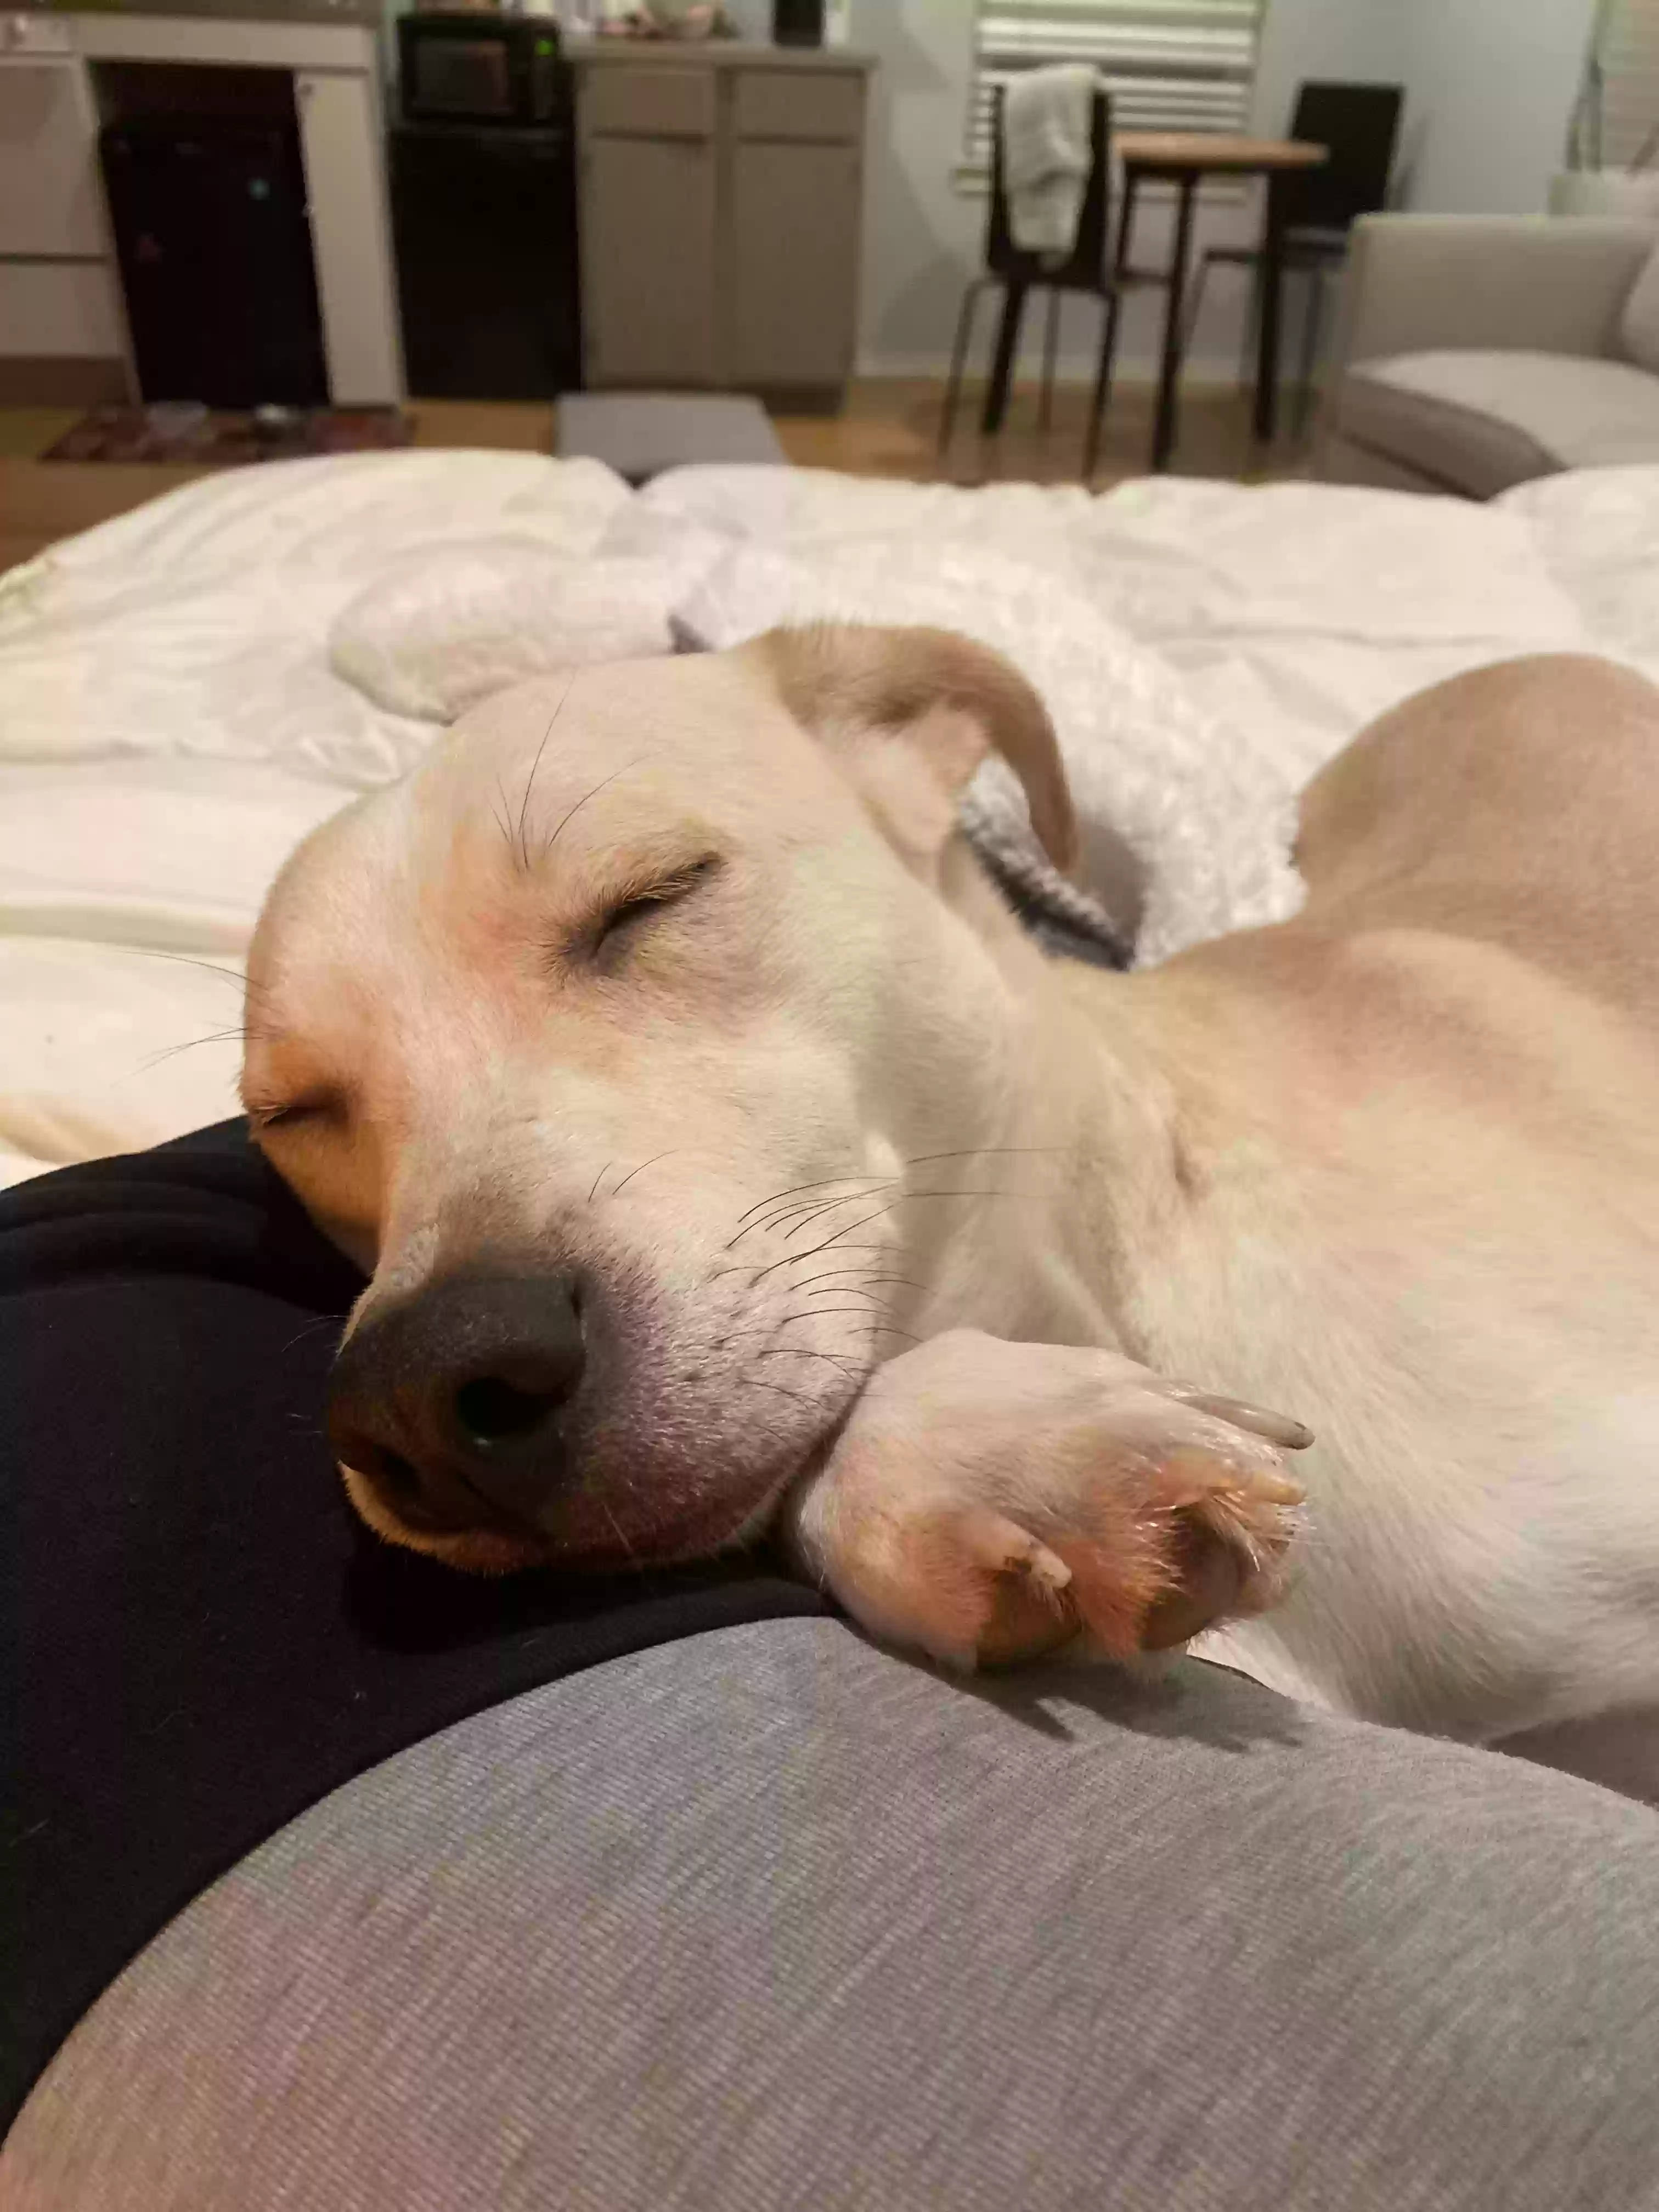 adoptable Dog in Dallas,TX named Poga